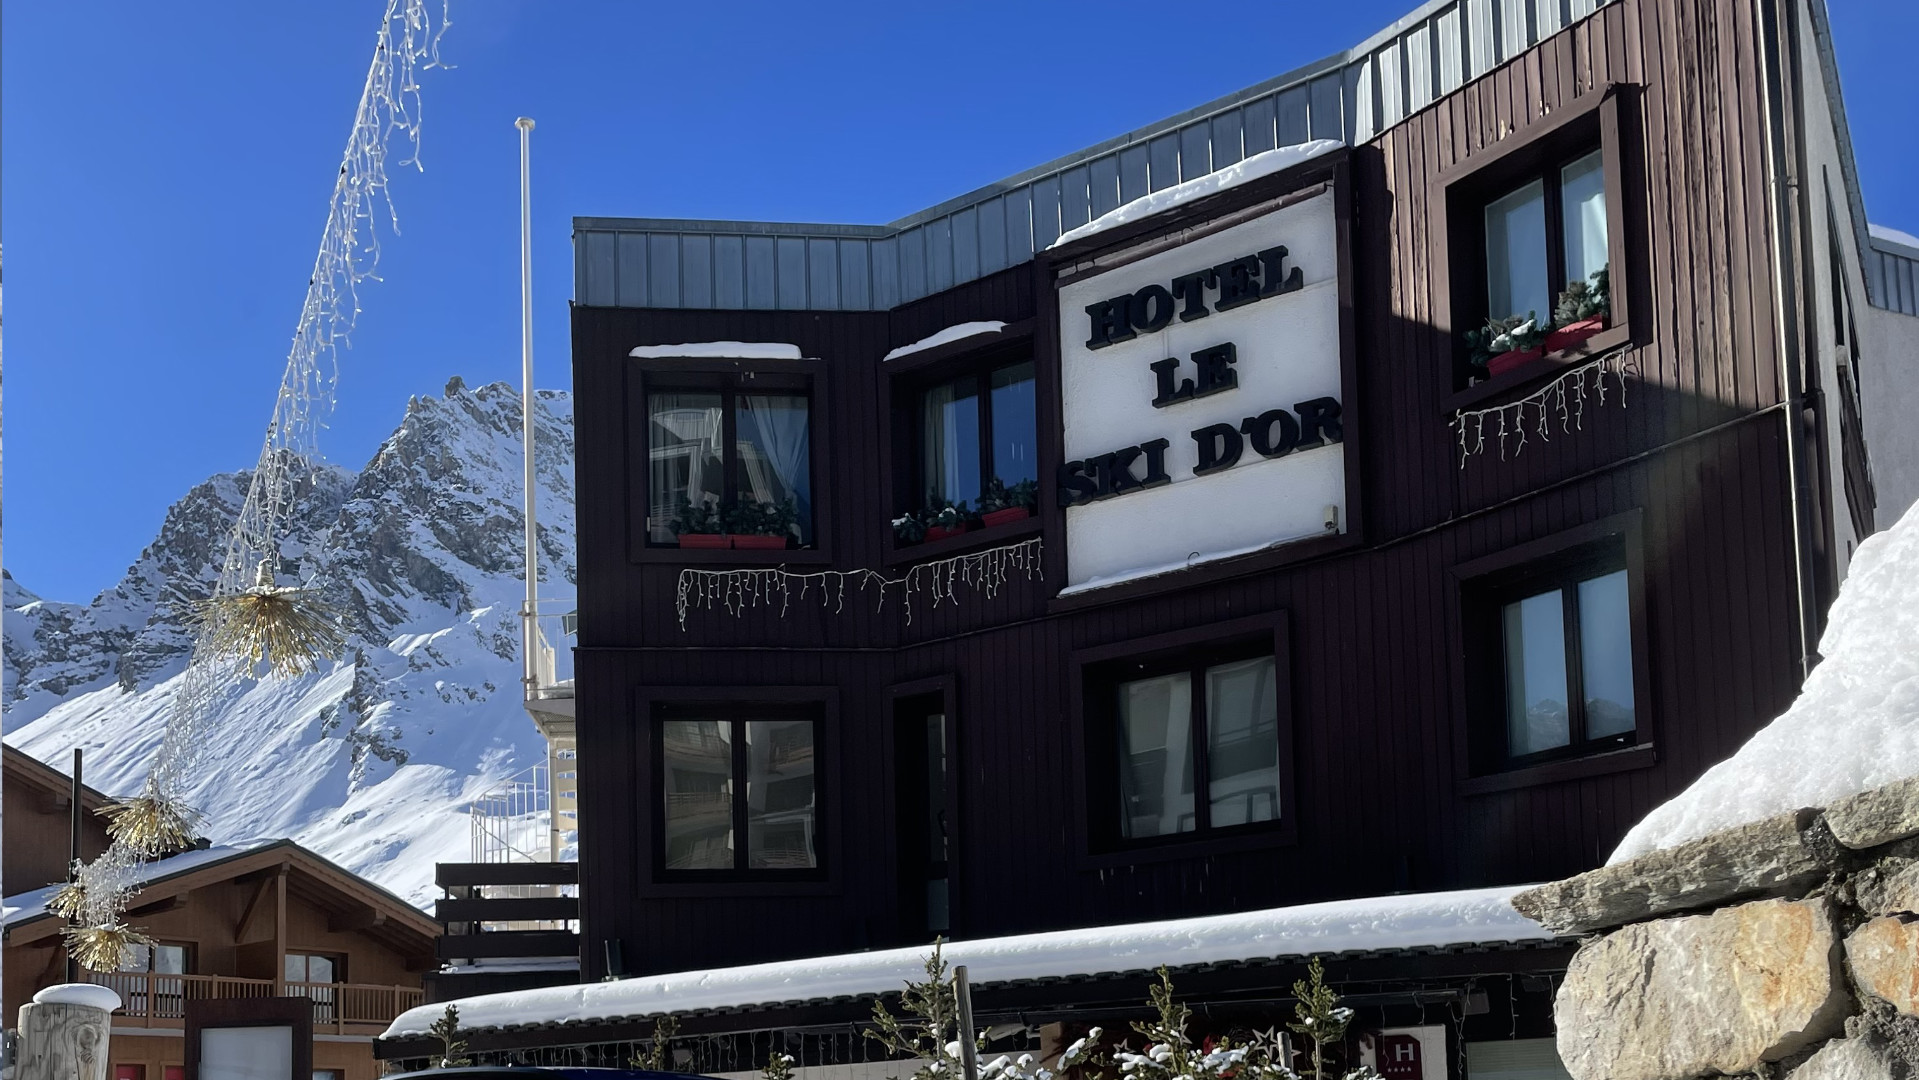 Hotel Ski d'Or, Tignes